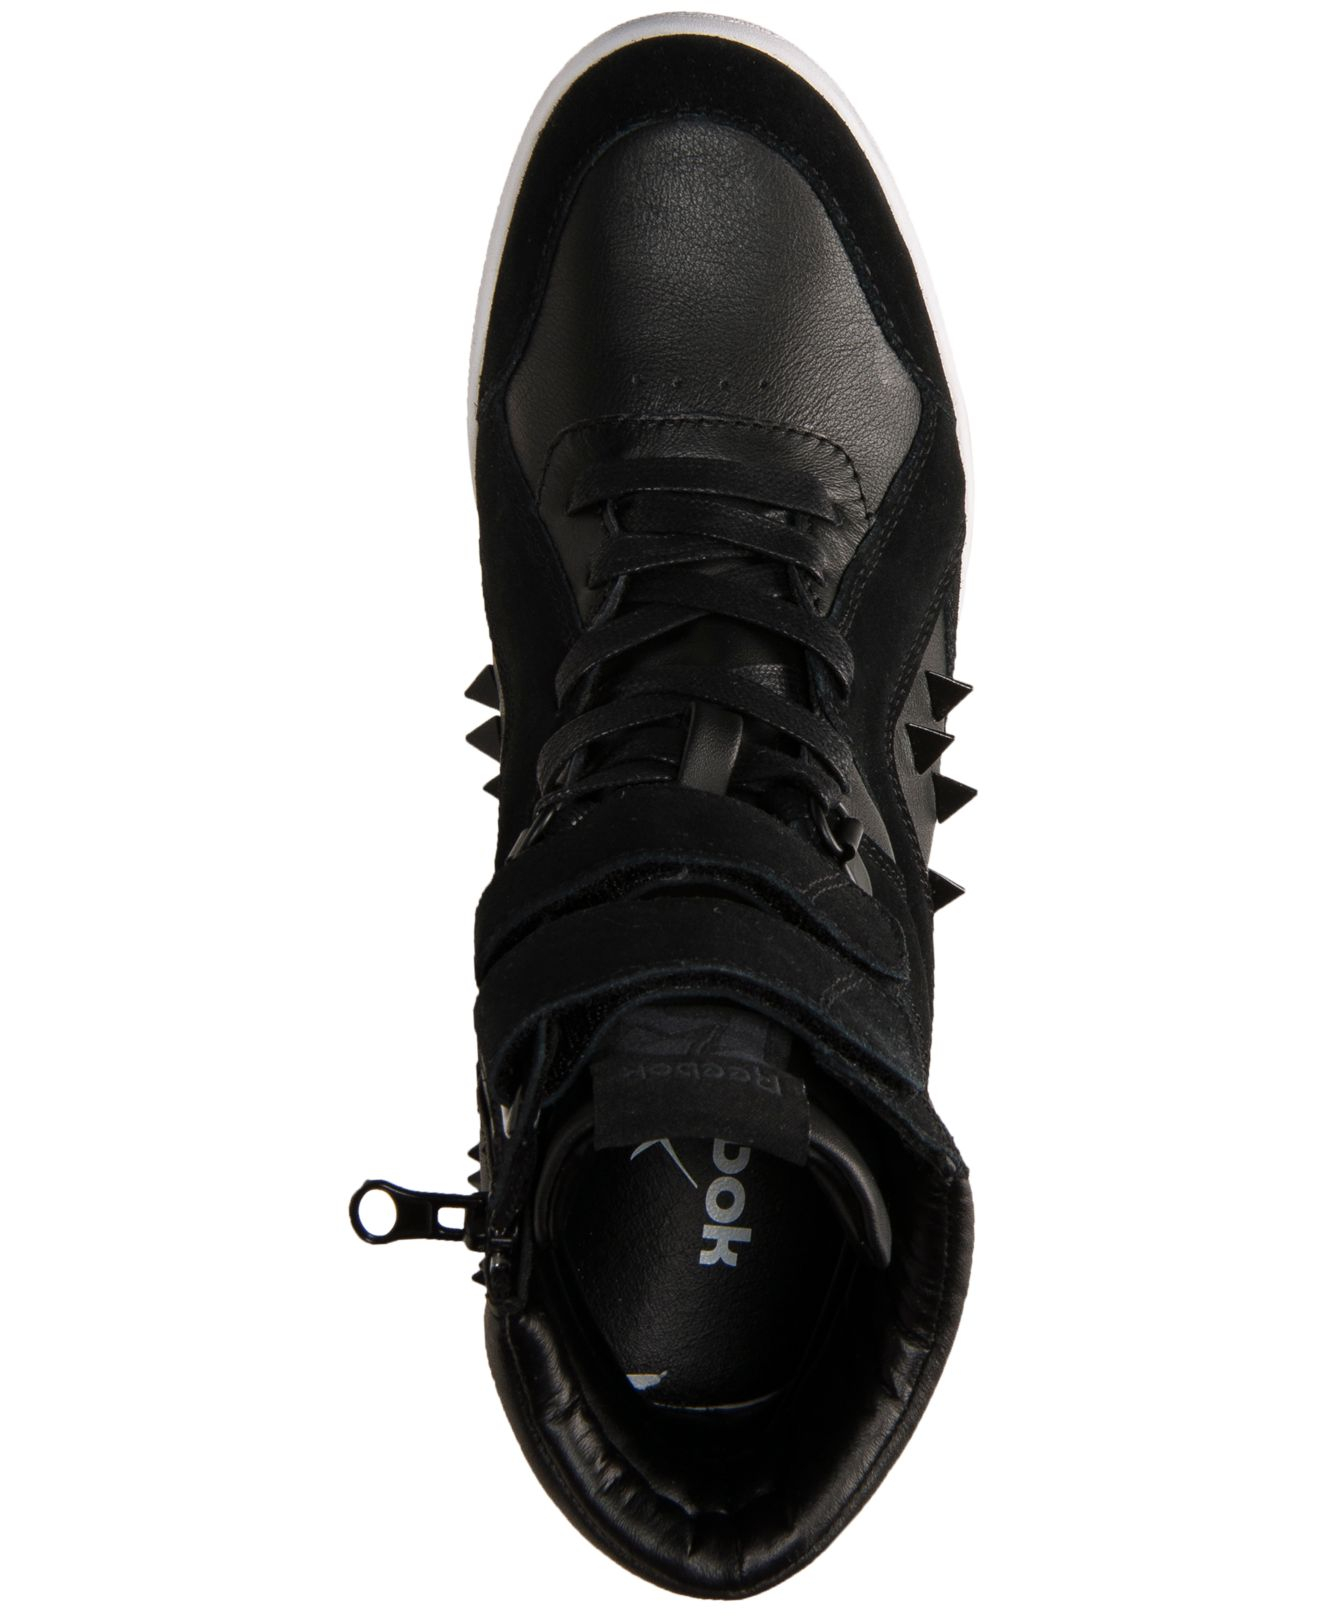 Reebok Women'S Alicia Keys Wedge Casual Sneakers From Finish in Black |